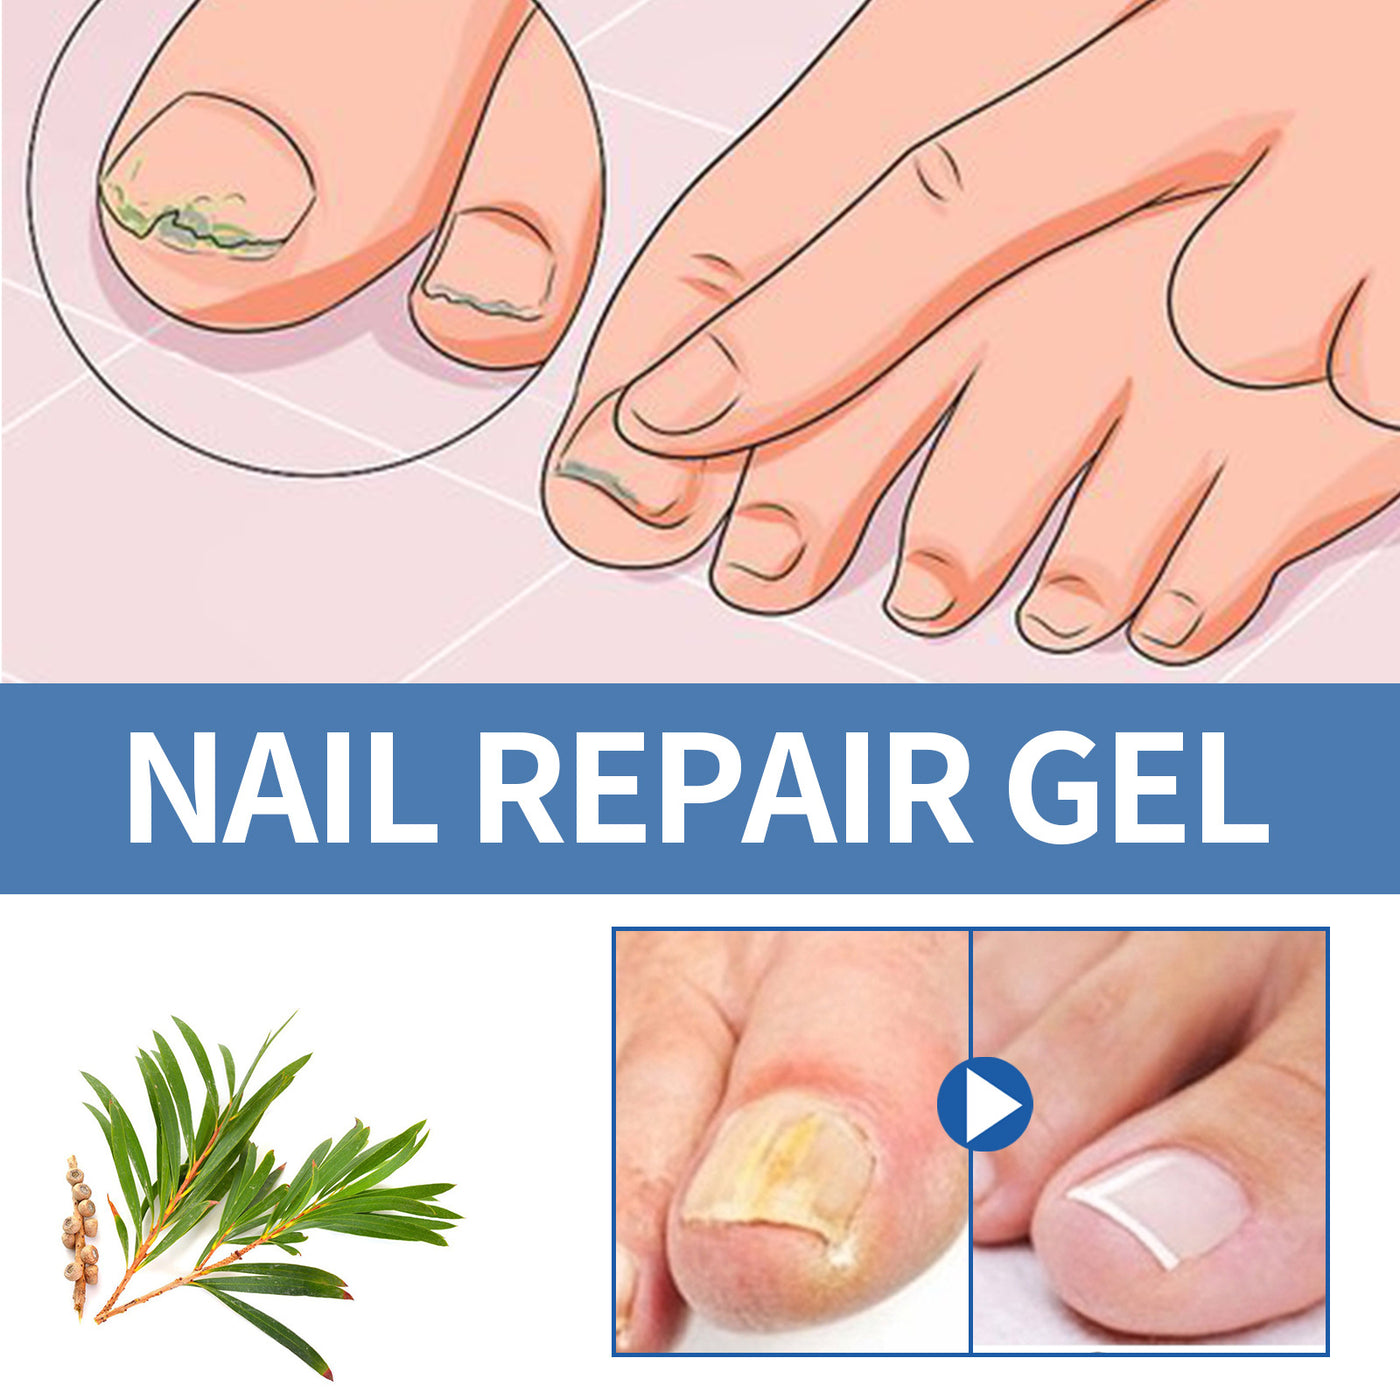 Nail Fungus Care Gel Repair